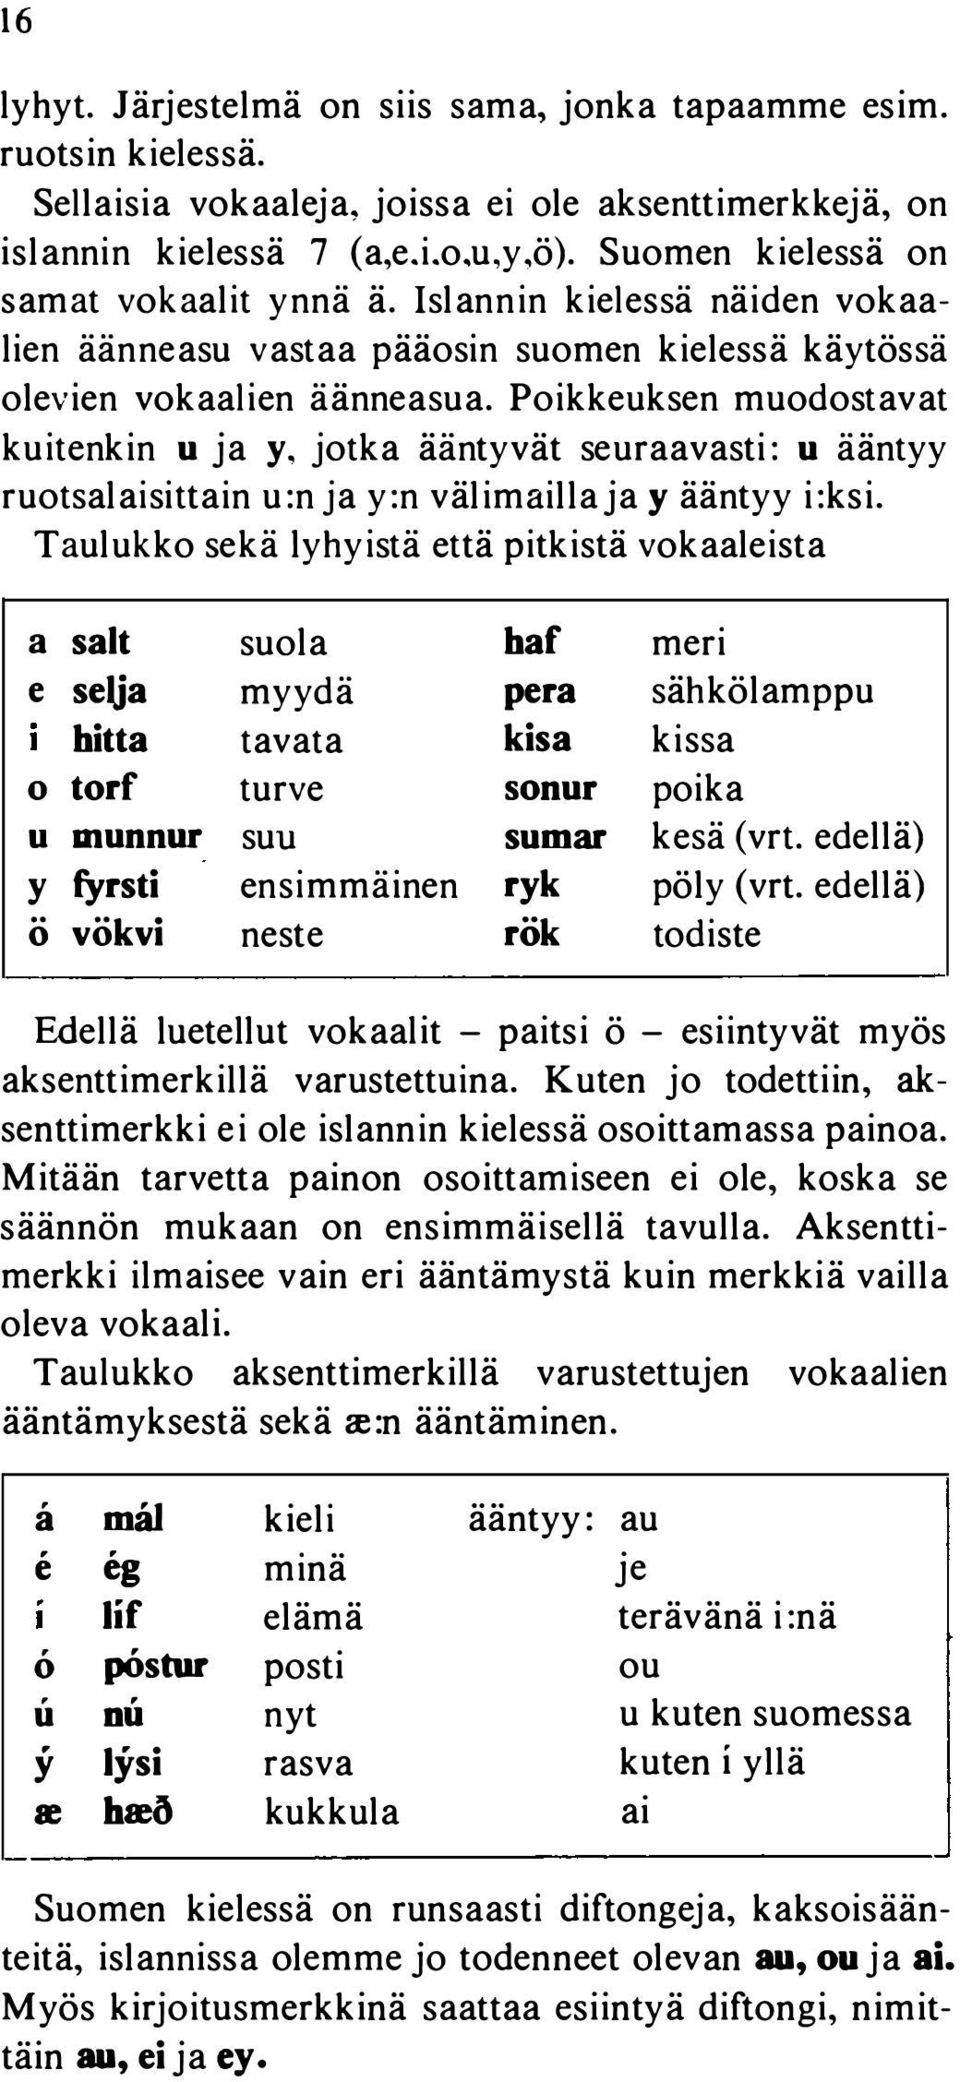 Poikkeuksen muodostavat kuitenkin u ja y, jotka ääntyvät seuraavasti: u ääntyy ruotsalaisittain u:n ja y:n välimailla ja y ääntyy i:ksi.